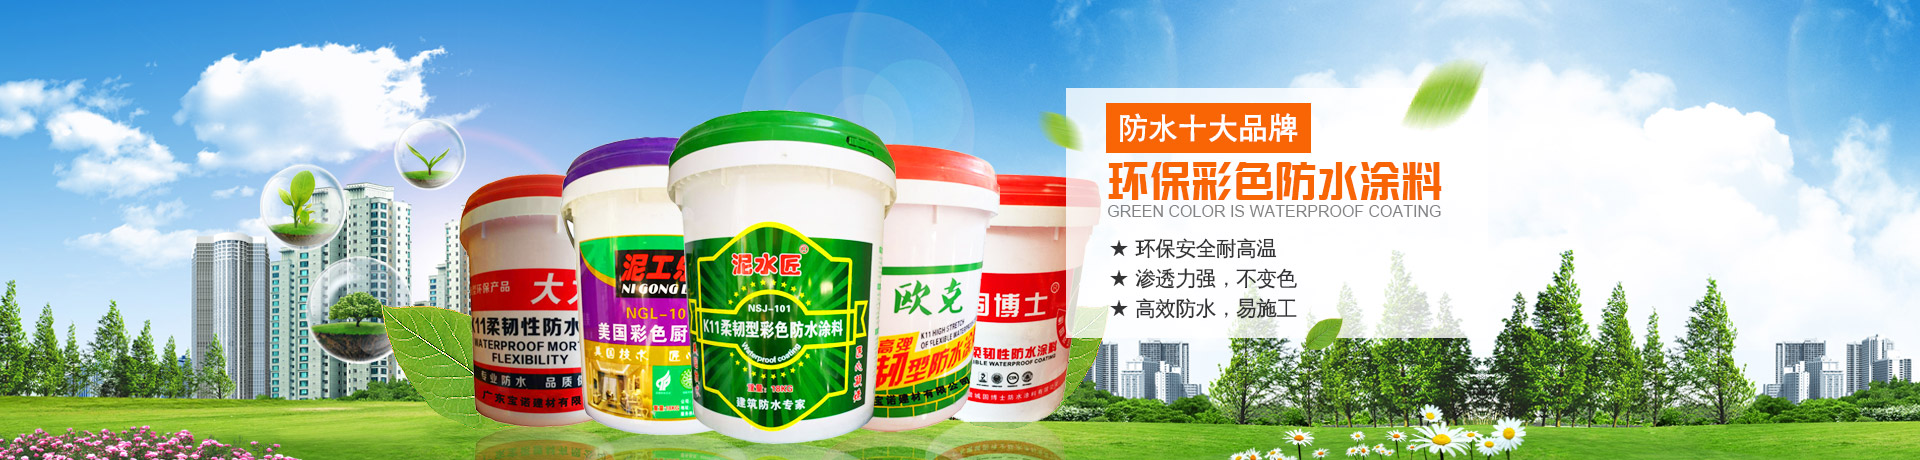 湛江市赤坎寶諾建筑材料有限公司--寶諾防水涂料|懷化防水涂料|寶諾建筑材料